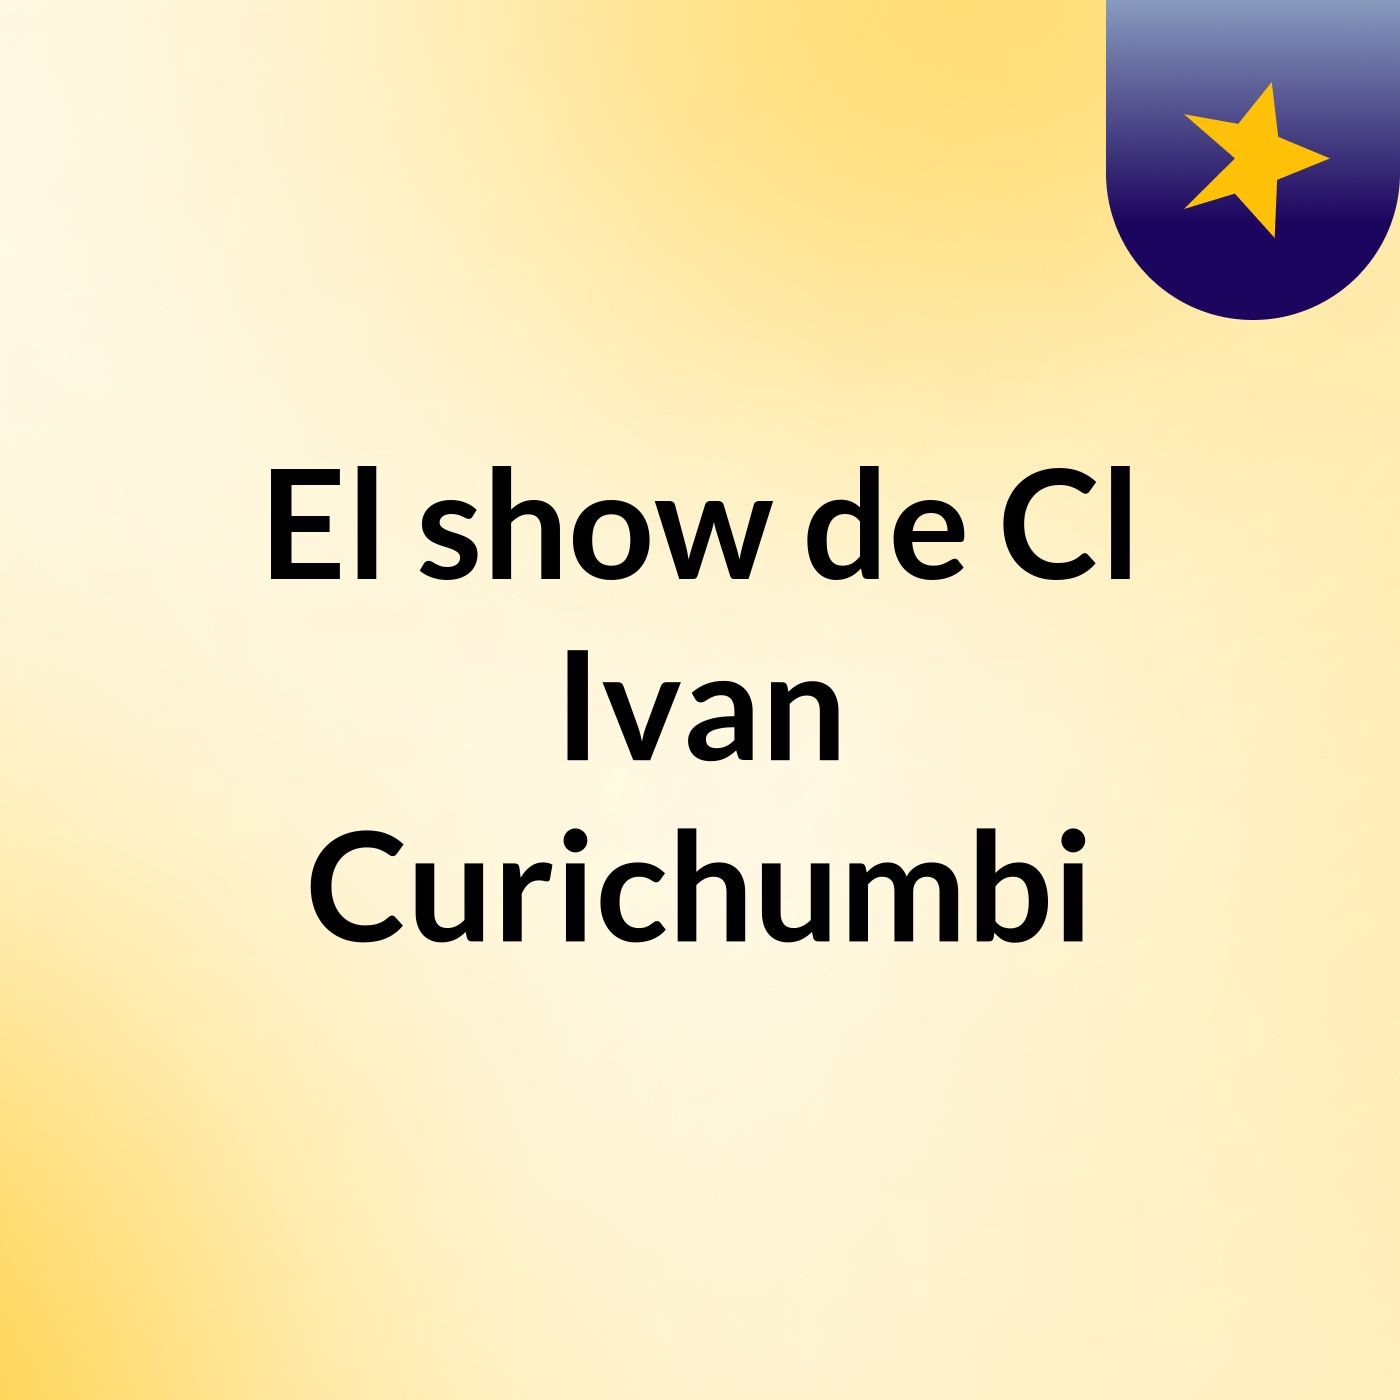 El show de Cl Ivan Curichumbi